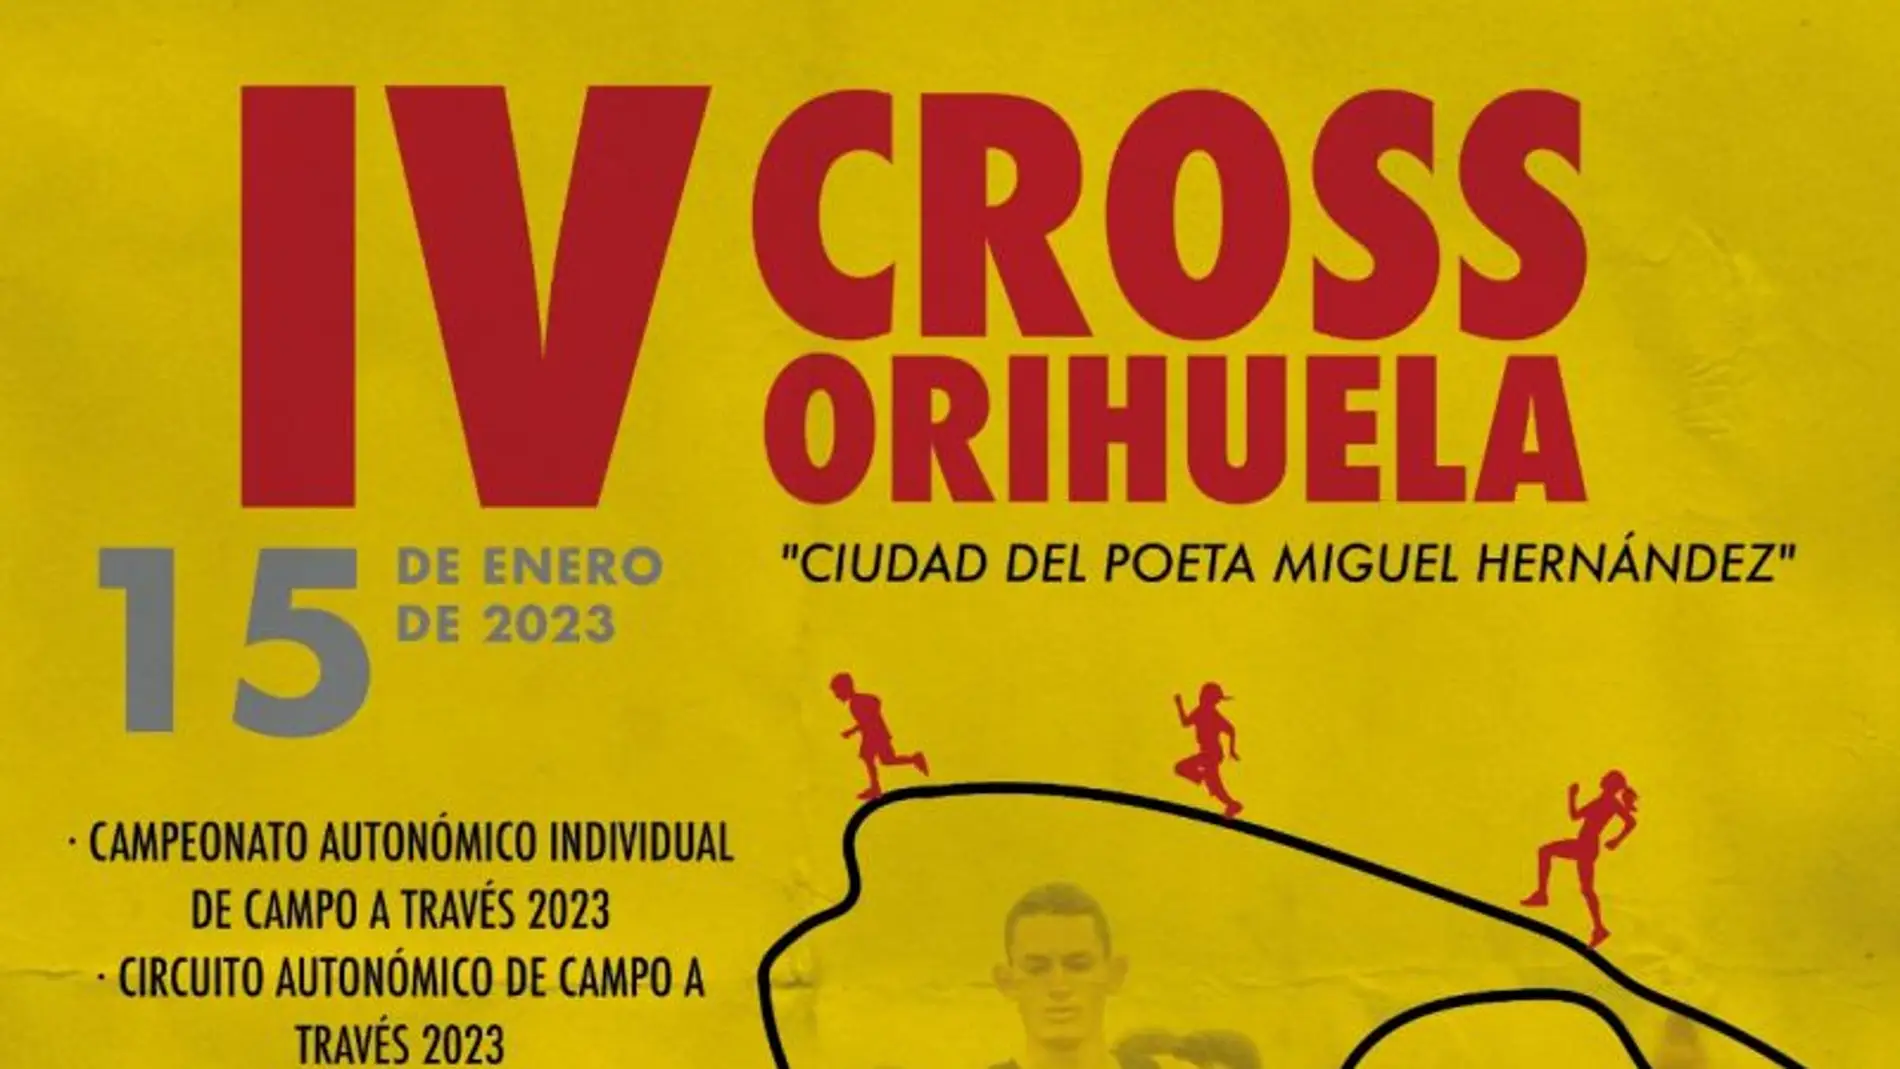 Orihuela acogerá el IV Cross “Ciudad de poeta Miguel Hernández” el próximo día 15 de enero 